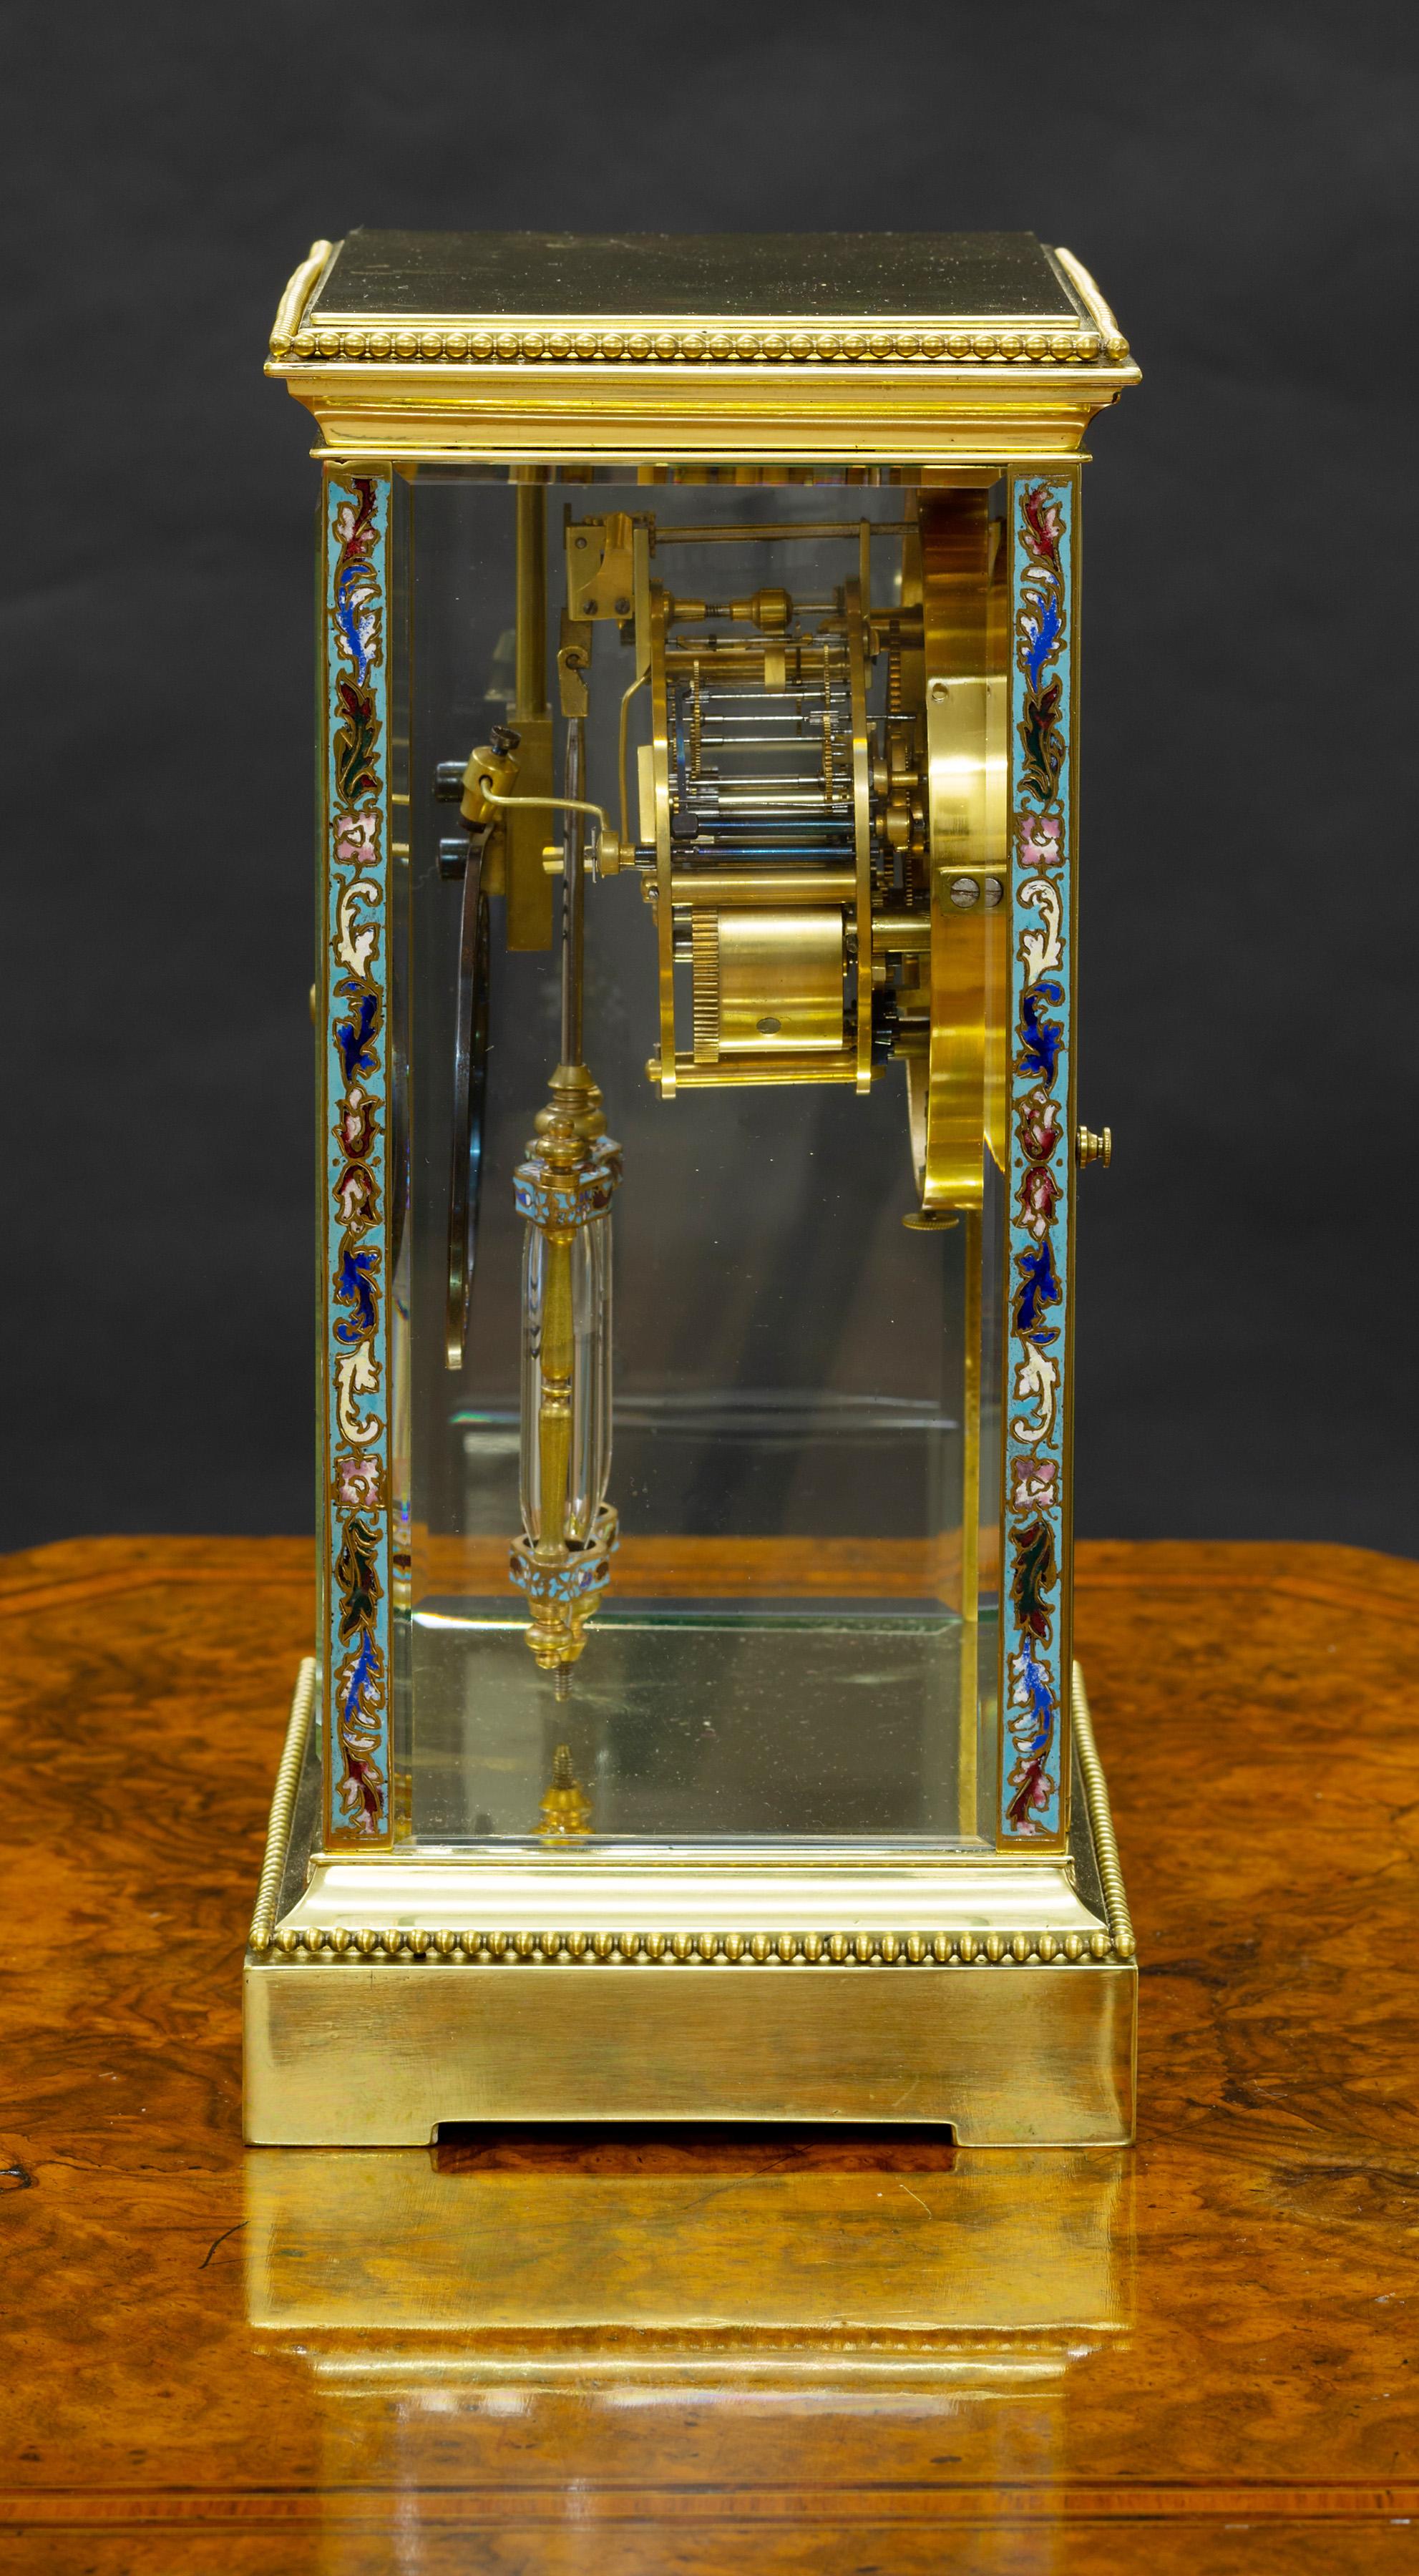 Französische Uhr mit vier Gläsern auf einem erhöhten Sockel mit Perlendekoration und feinem Champleve-Emaille-Dekor auf den Säulen und der Lünette mit weiterem dekoriertem quecksilberkompensiertem Pendel.

Acht-Tage-Werk, signiert 'Japy Freres',